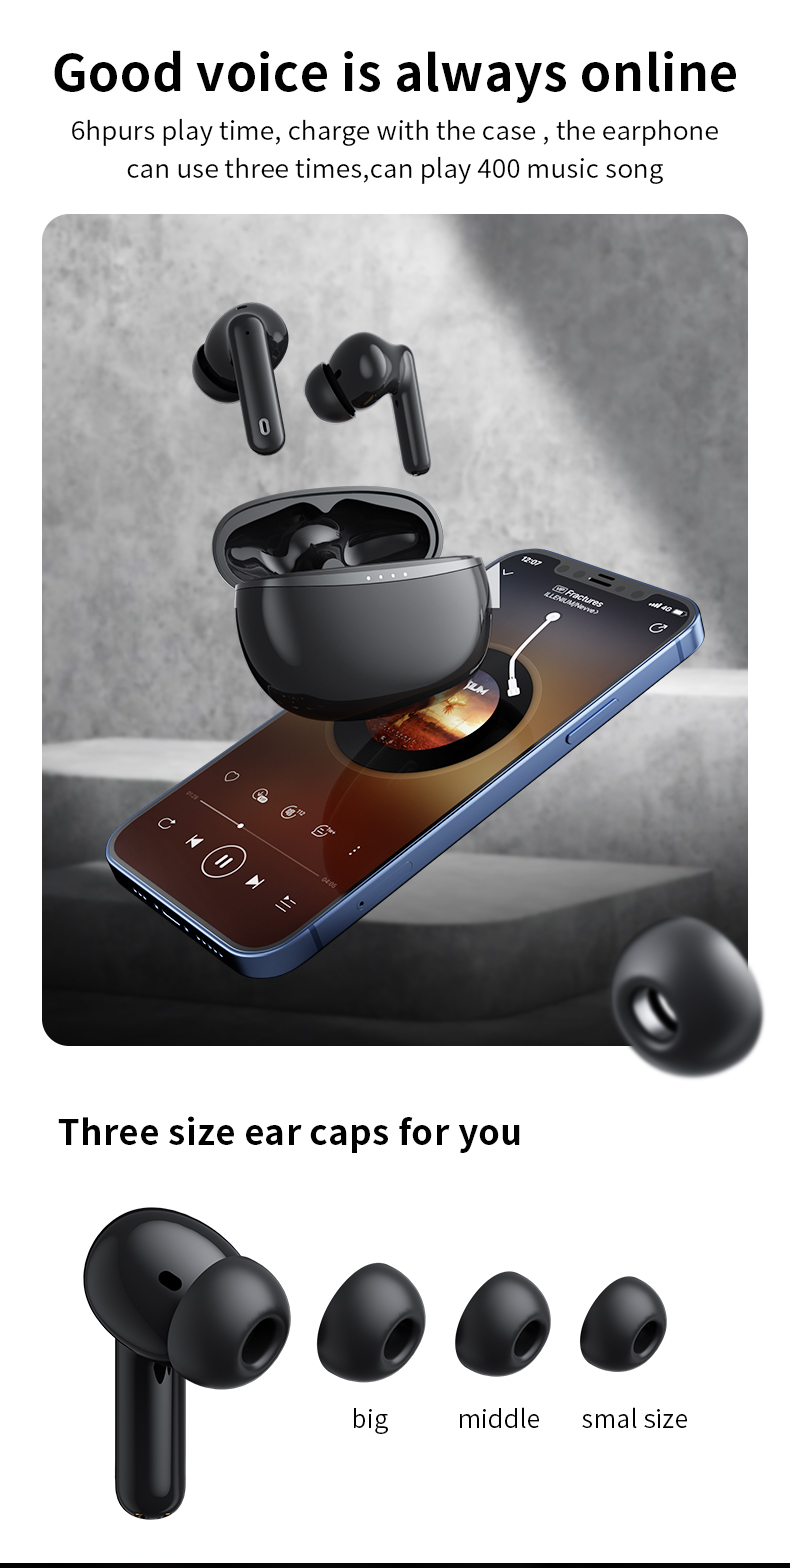 China Strength Sound Factory najlepsze zestawy słuchawkowe do gier w fabryce sprzedaż bezpośrednia mini bezprzewodowe zestawy słuchawkowe BJBJ A50 Pro